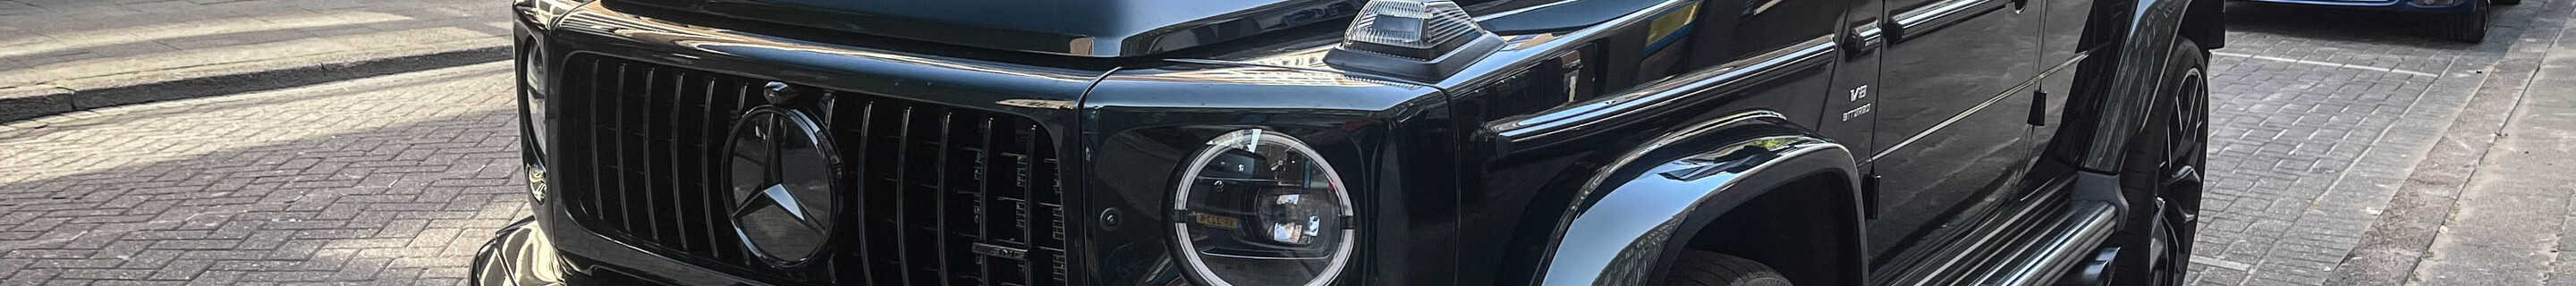 Mercedes-AMG G 63 W463 2018 Urban 700 S